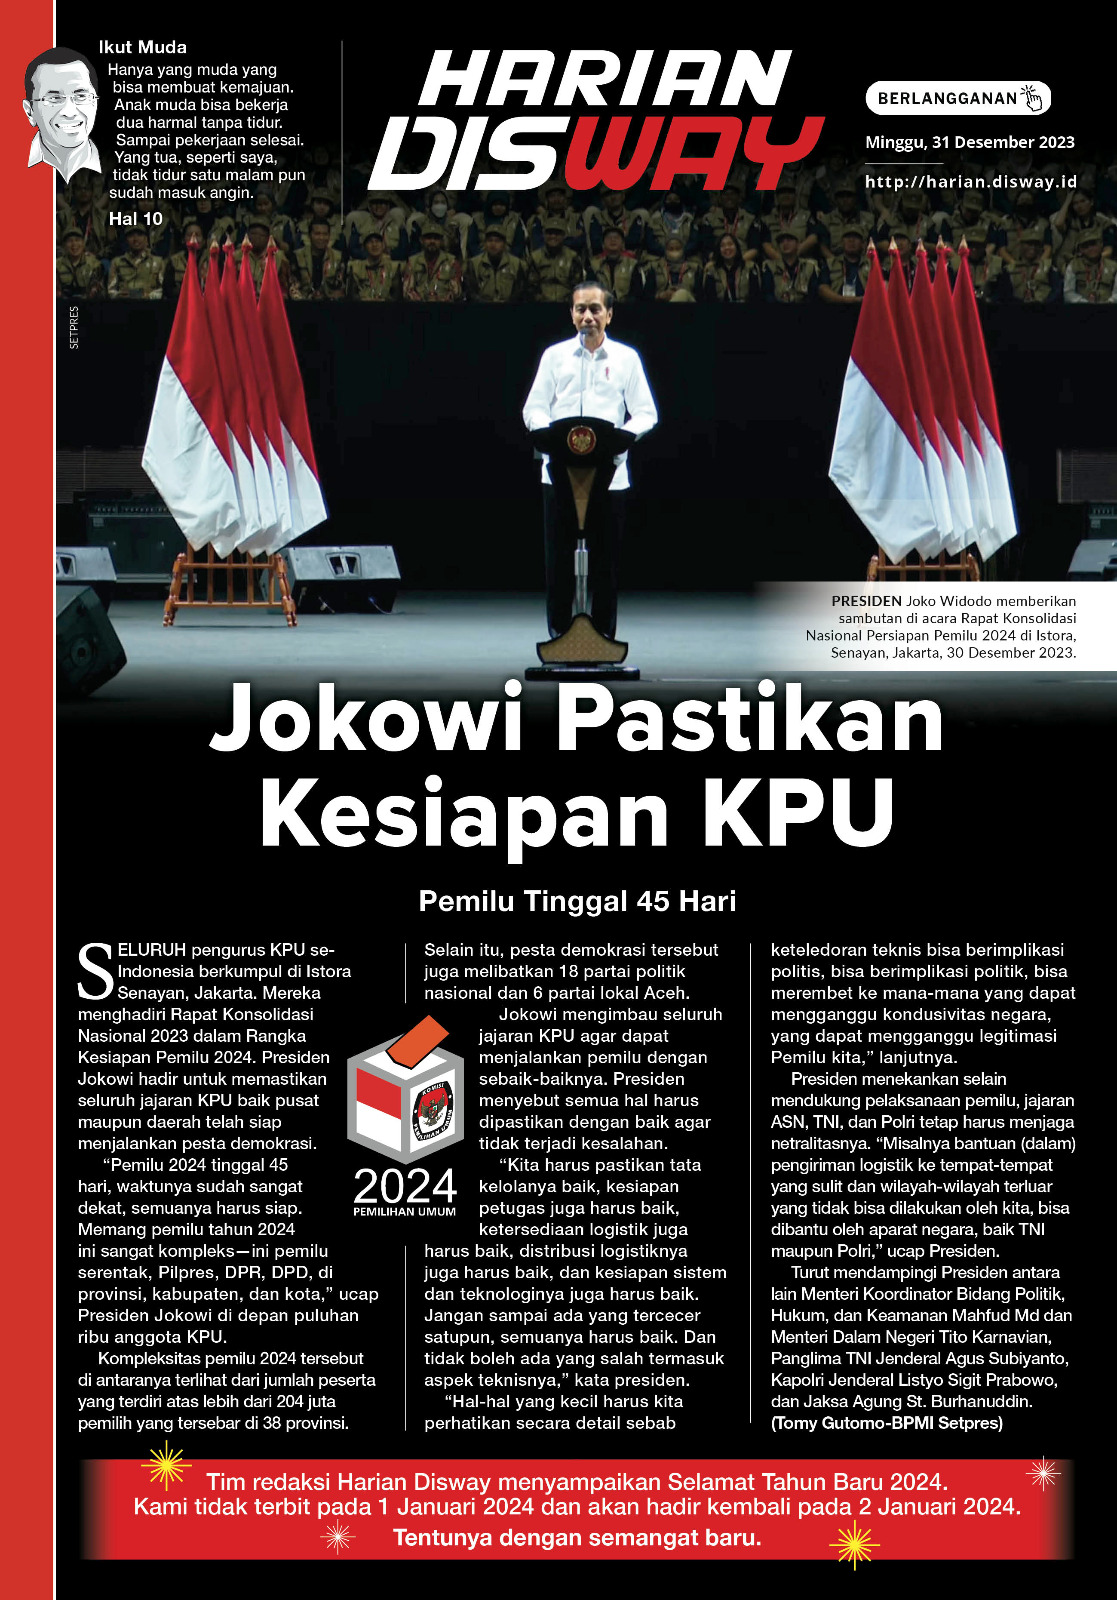 Jokowi Pastikan Kesiapan KPU